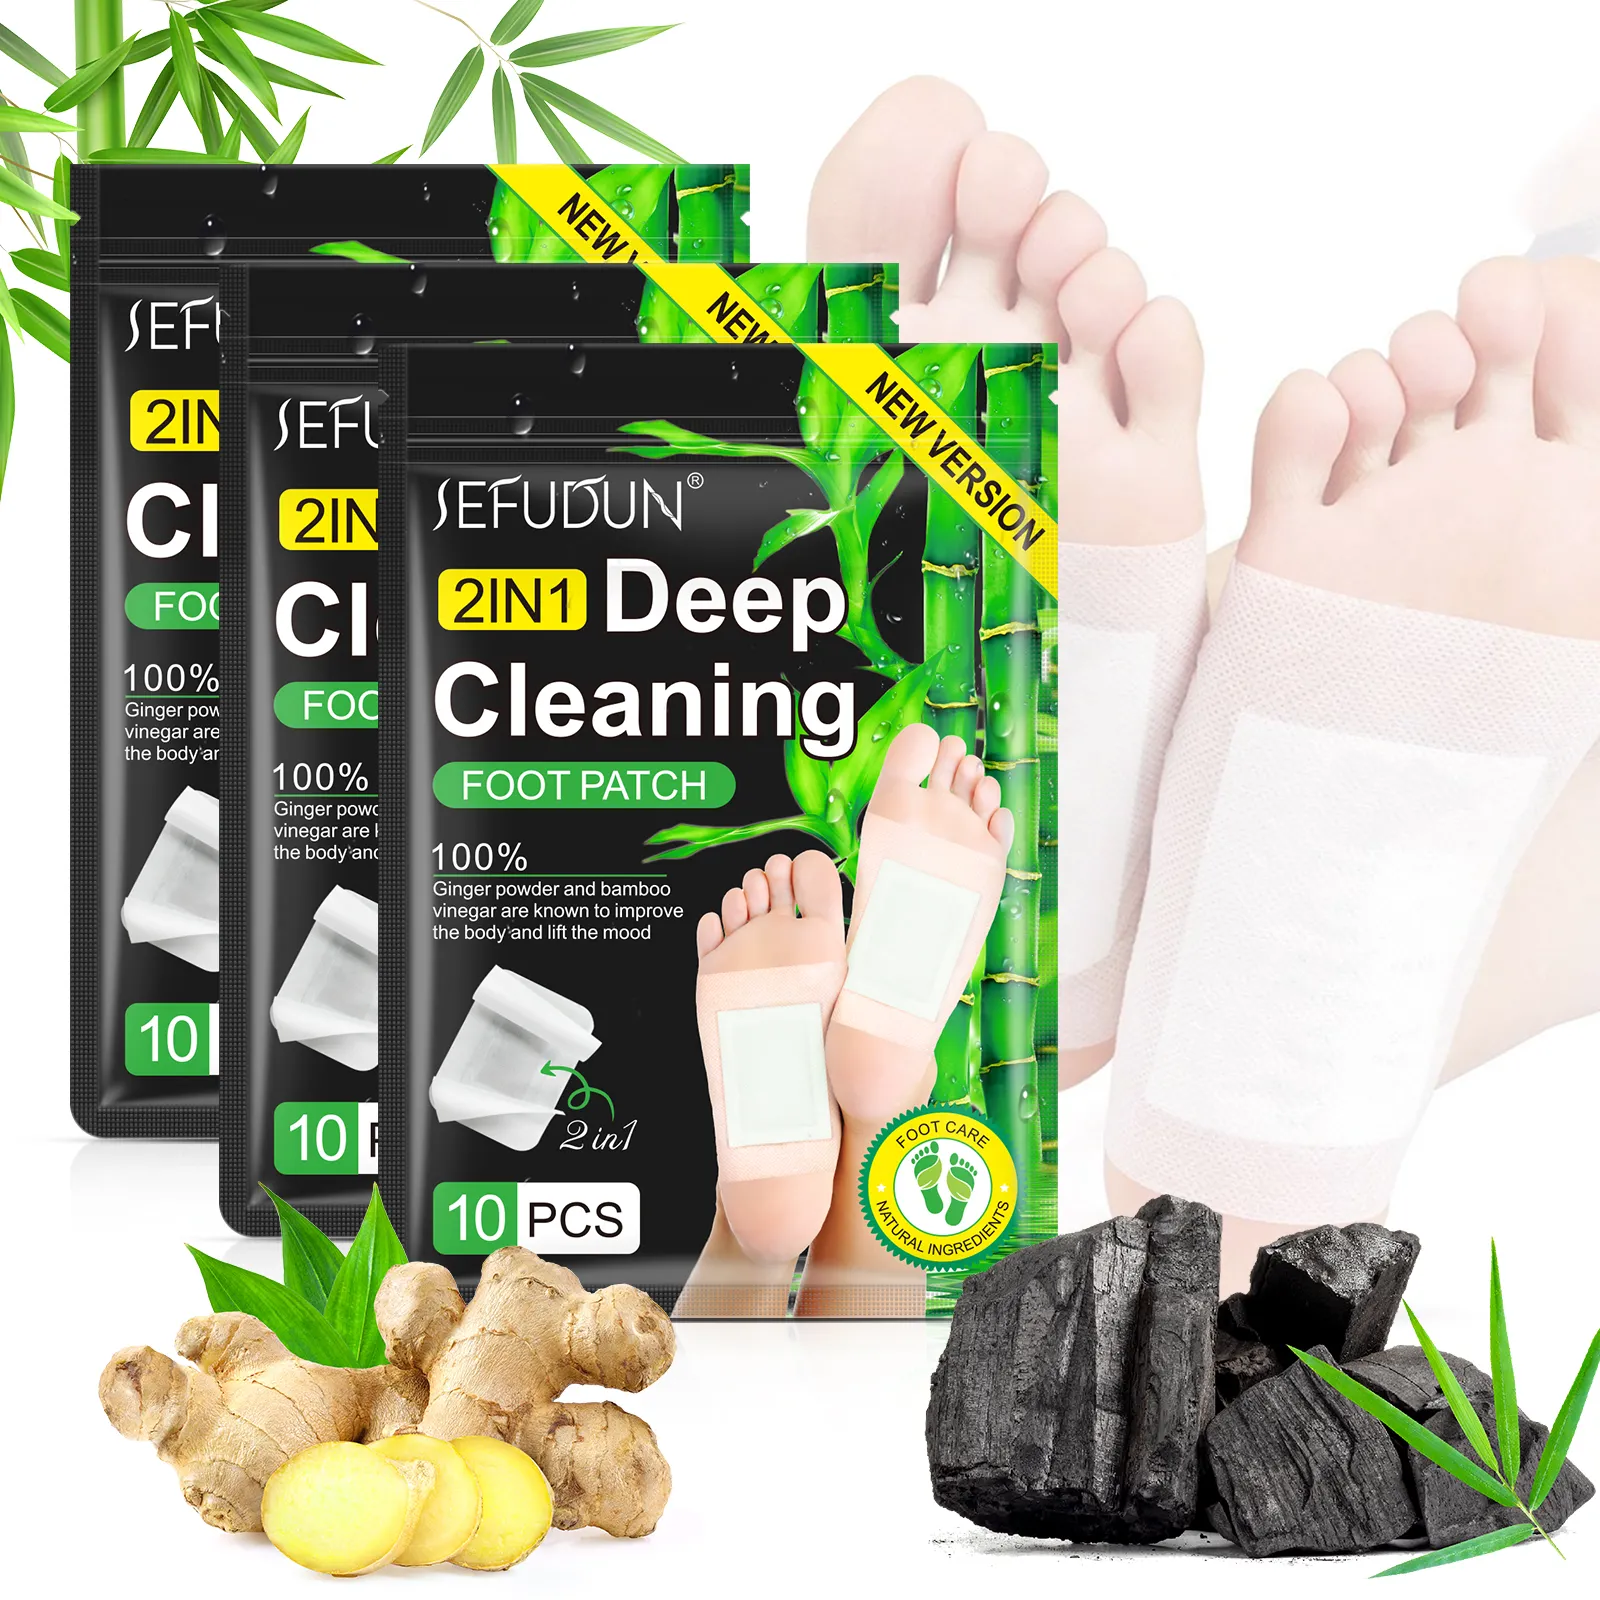 Nuovo prodotto più venduto dimagrante Bamboo Deep Cleansing Foot Pad Detox Foot Care Sleep Aid perdita di peso Detox Foot Patch per il corpo